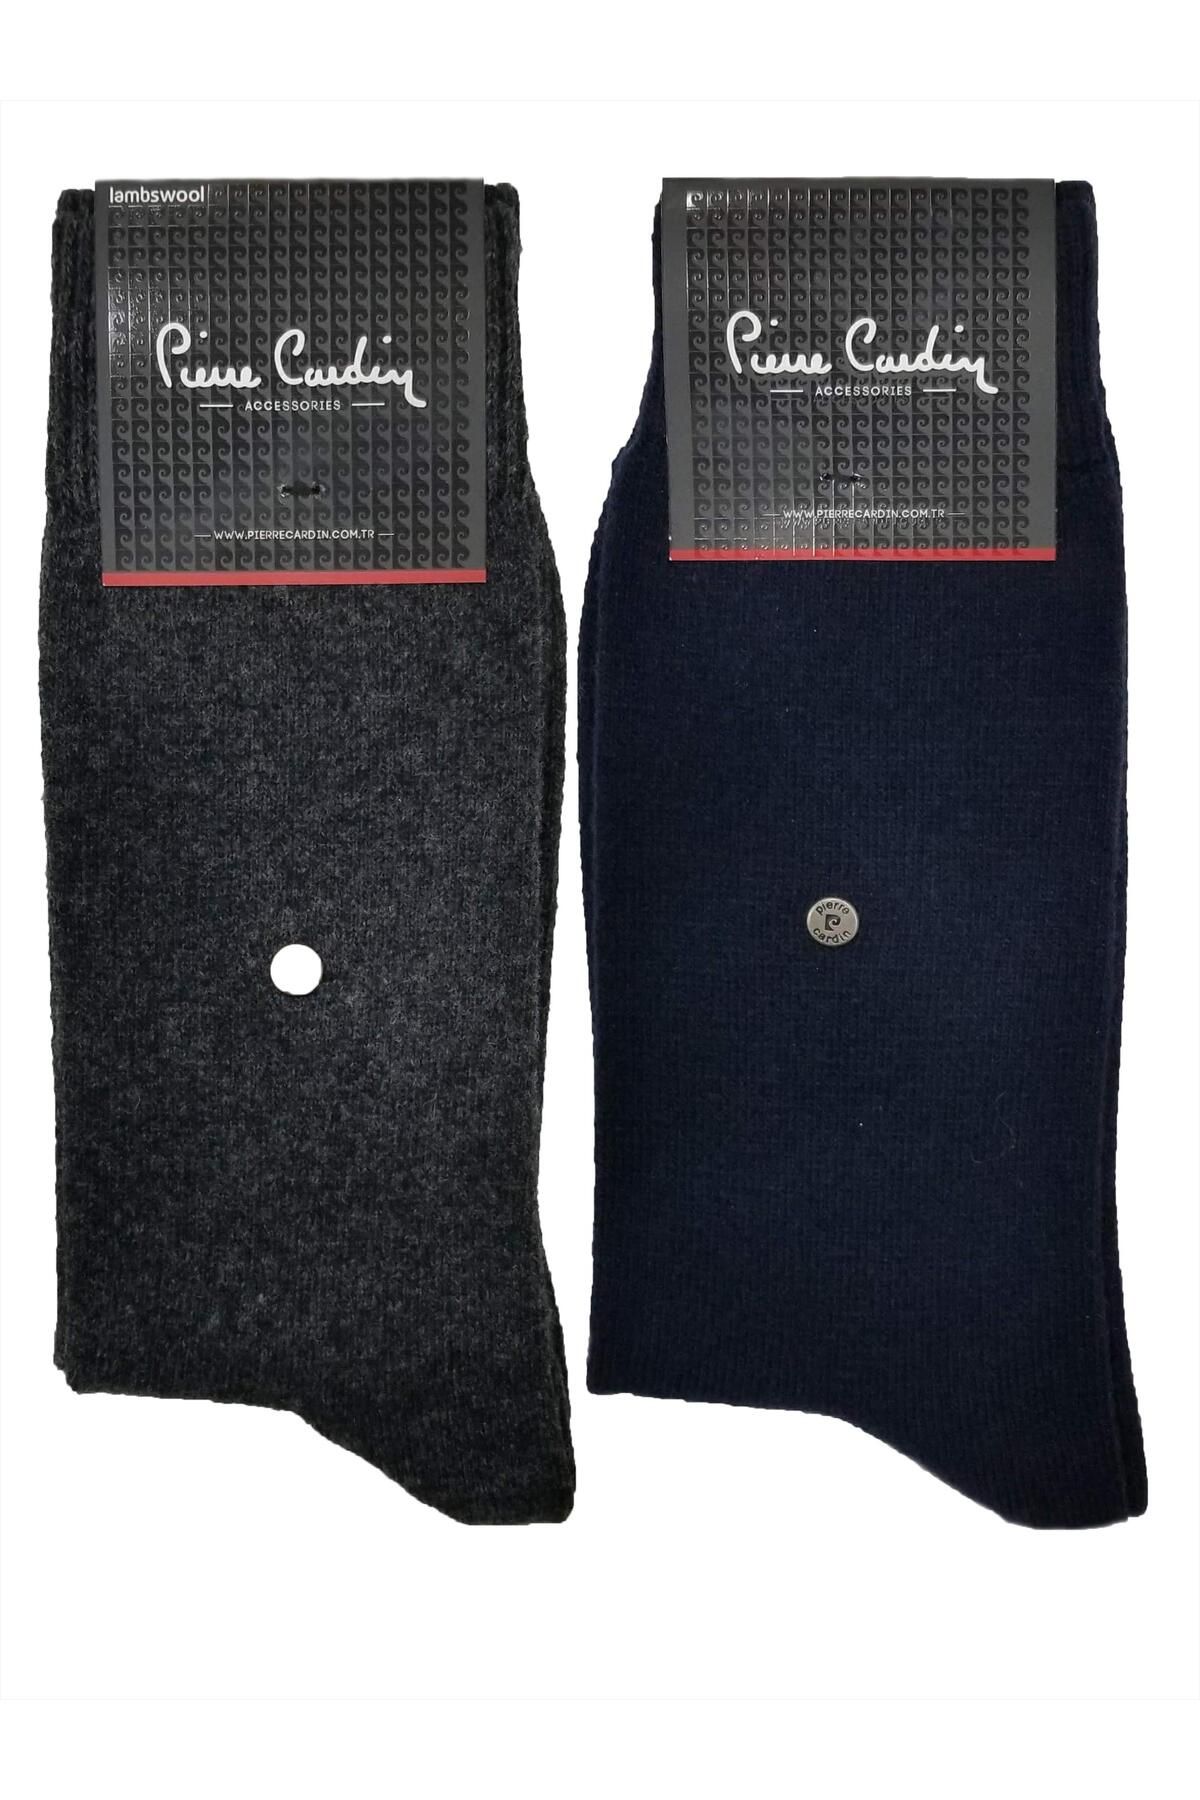 Pierre Cardin 6 Adet Lambswool - Yünlü Kışlık Erkek Çorap